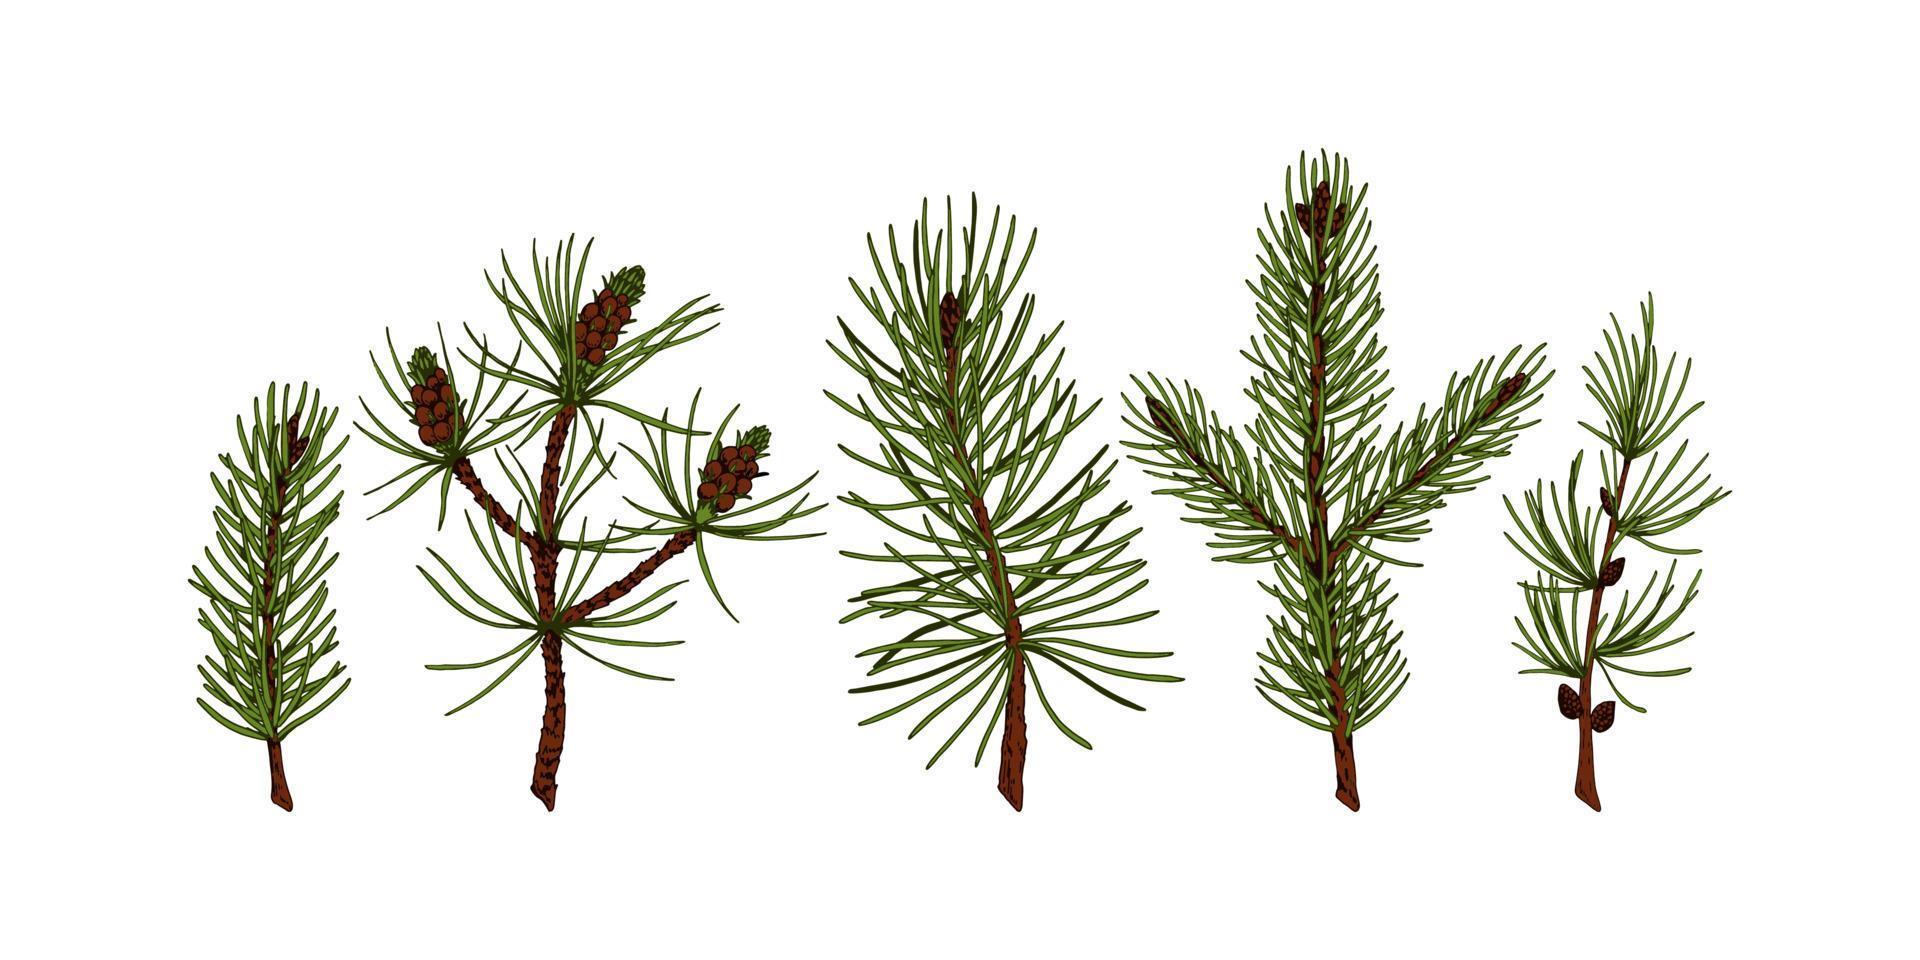 uppsättning handritade vintergröna växter i färgad skissstil isolerad på vit bakgrund. vektor illustration av tall, gran, lärk, julgranar. jul och nyår inredning element